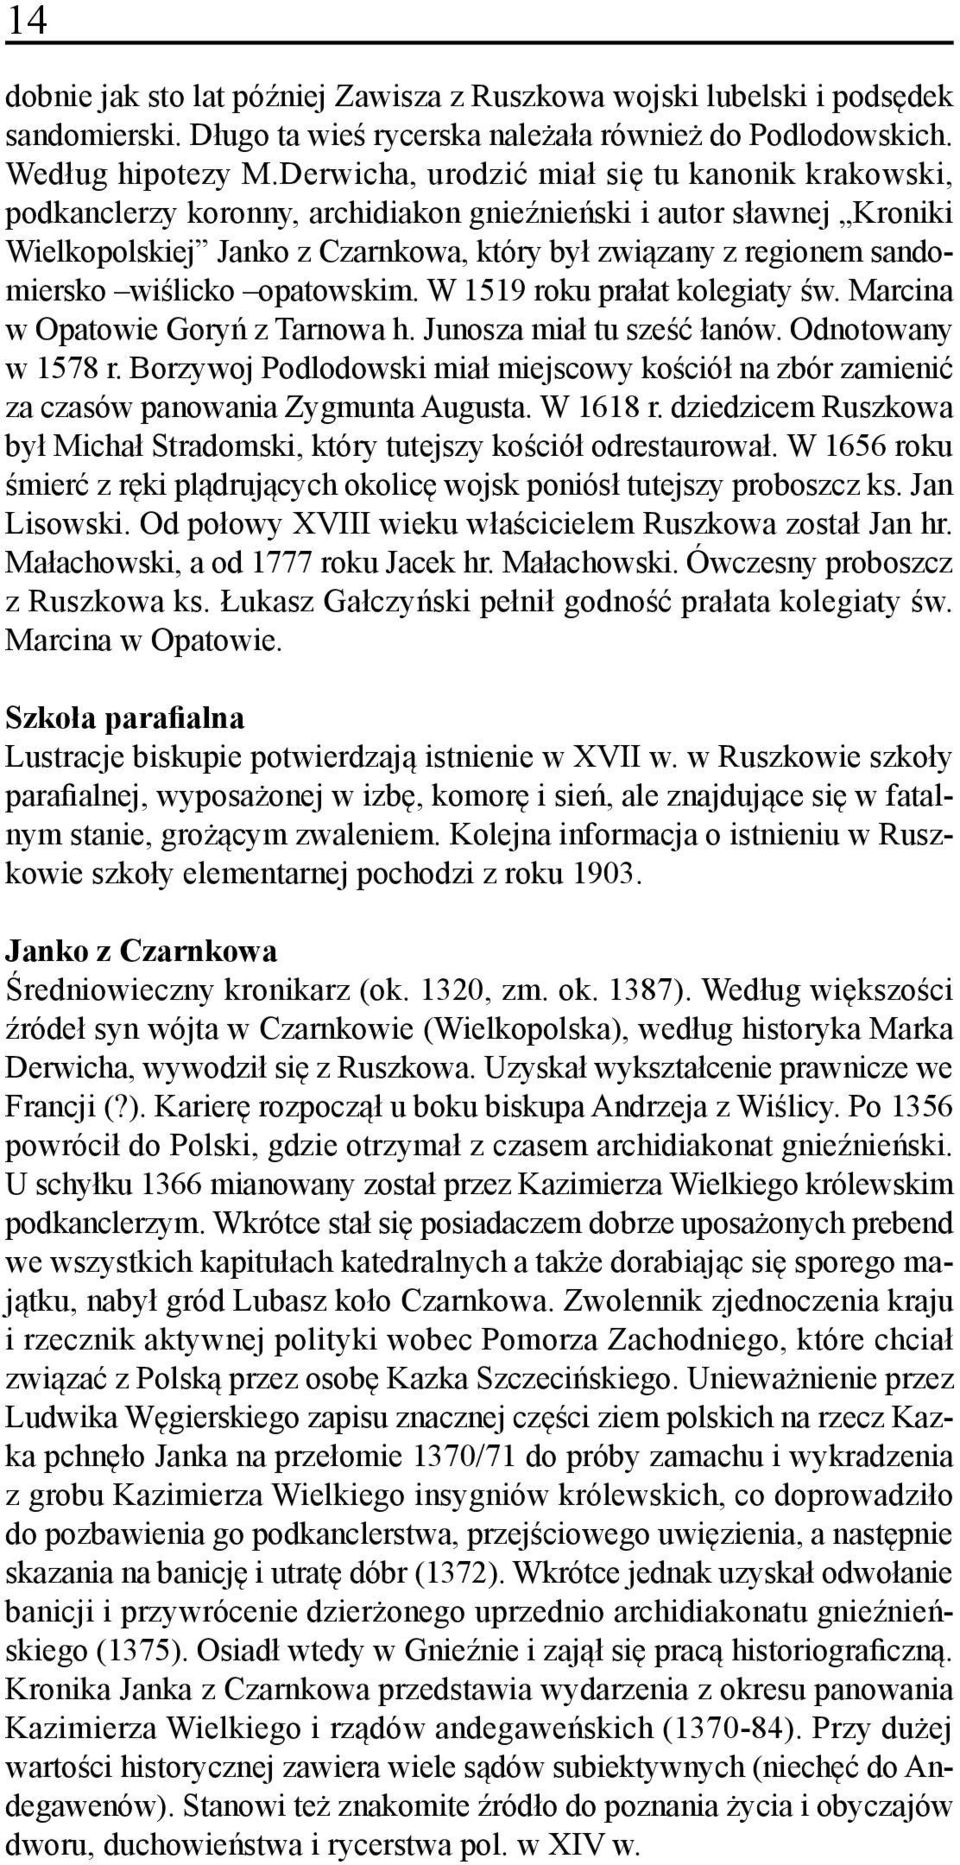 wiślicko opatowskim. W 1519 roku prałat kolegiaty św. Marcina w Opatowie Goryń z Tarnowa h. Junosza miał tu sześć łanów. Odnotowany w 1578 r.